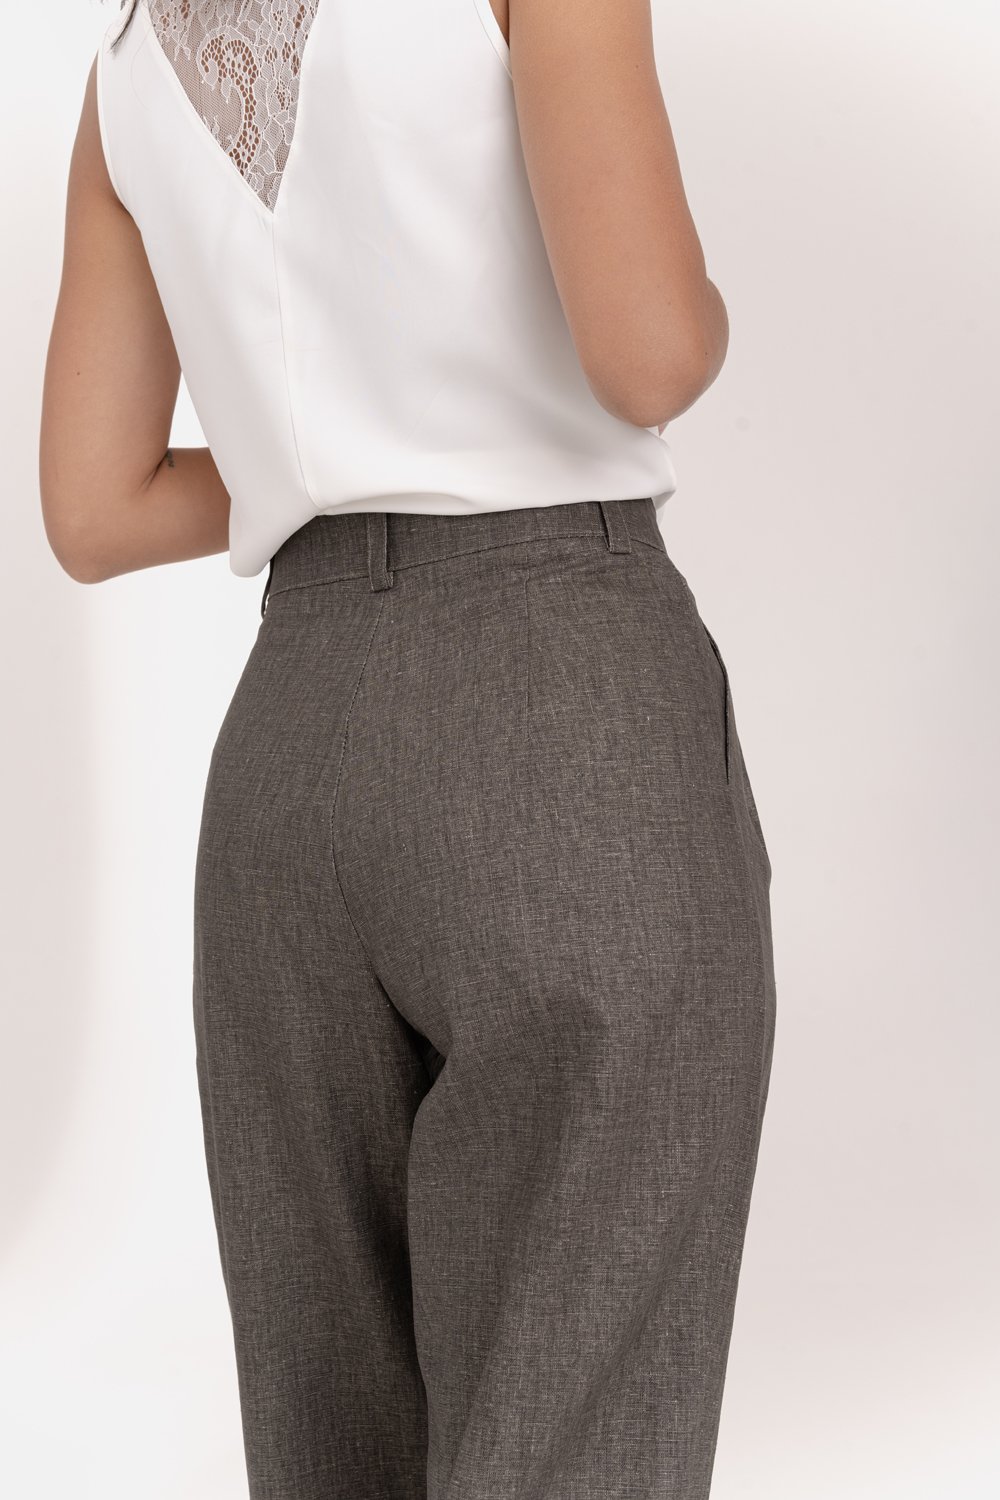 Wide linen trousers in Hazelnut color